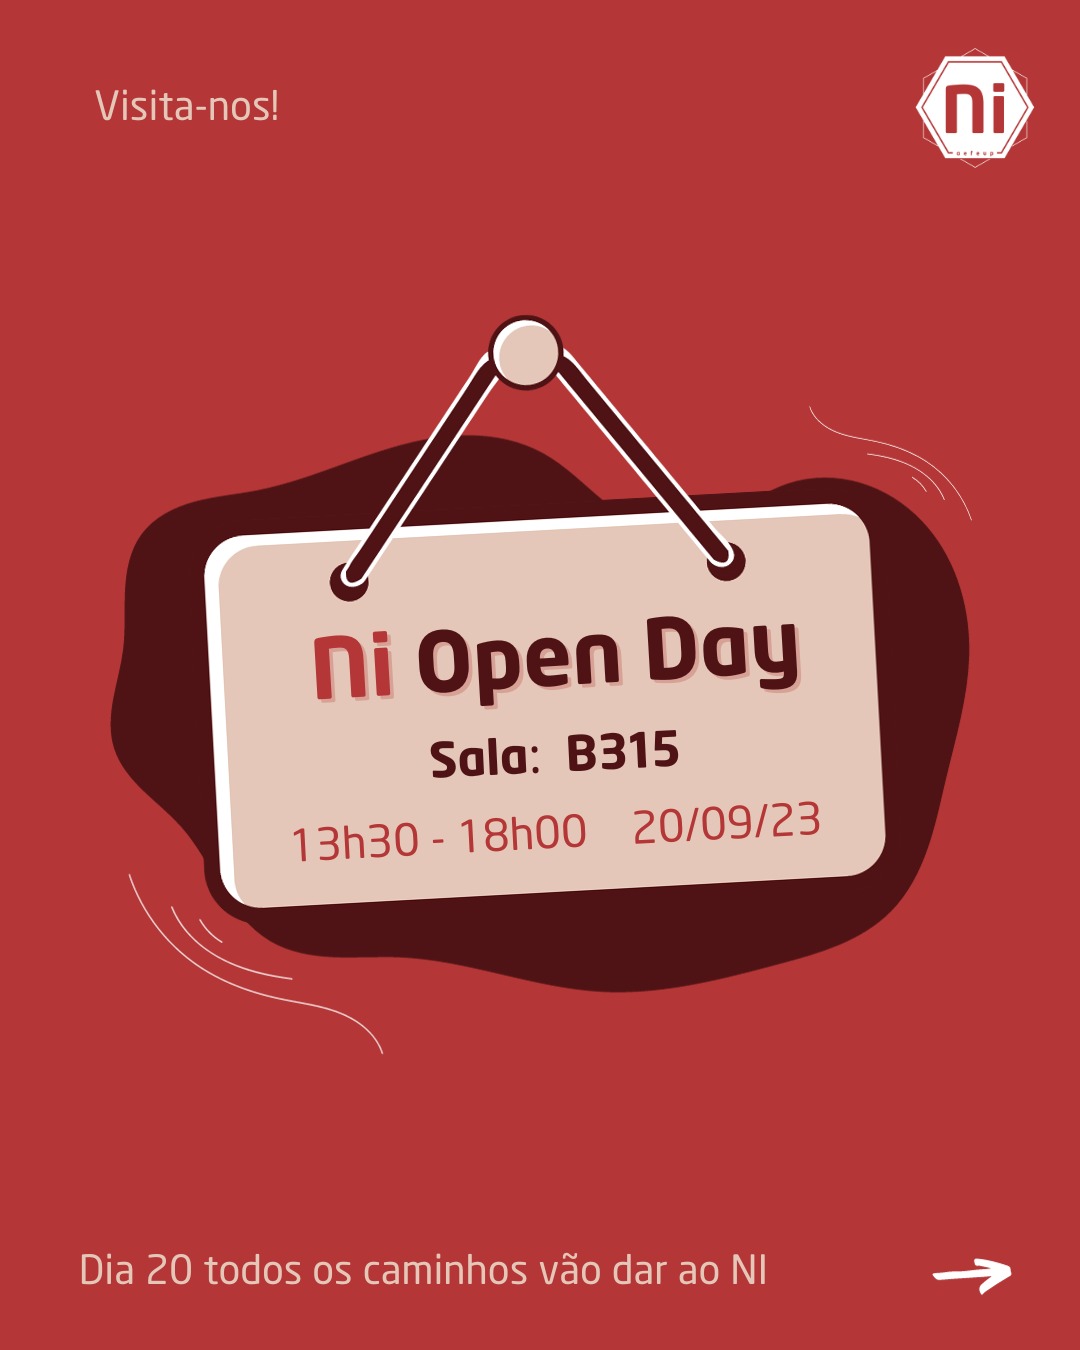 NI Open Day